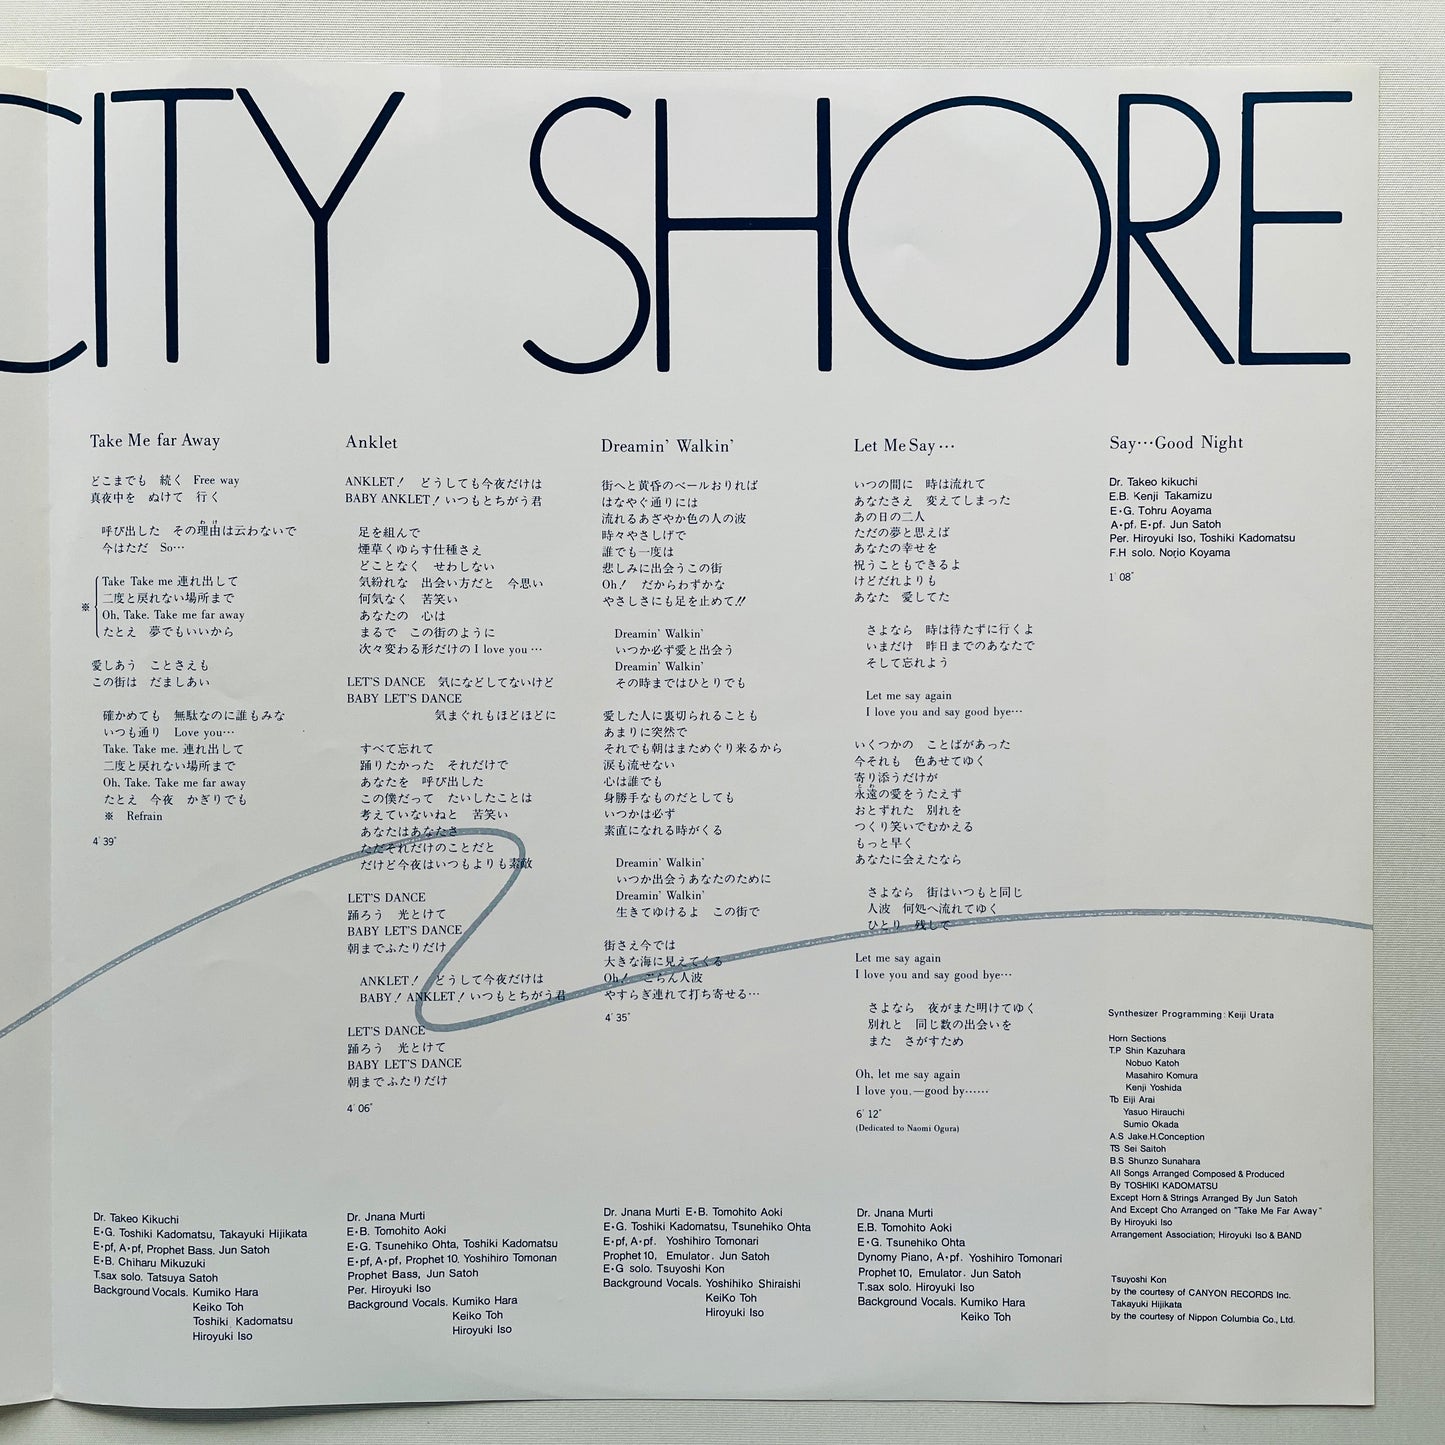 Toshiki Kadomatsu – On The City Shore (Original)